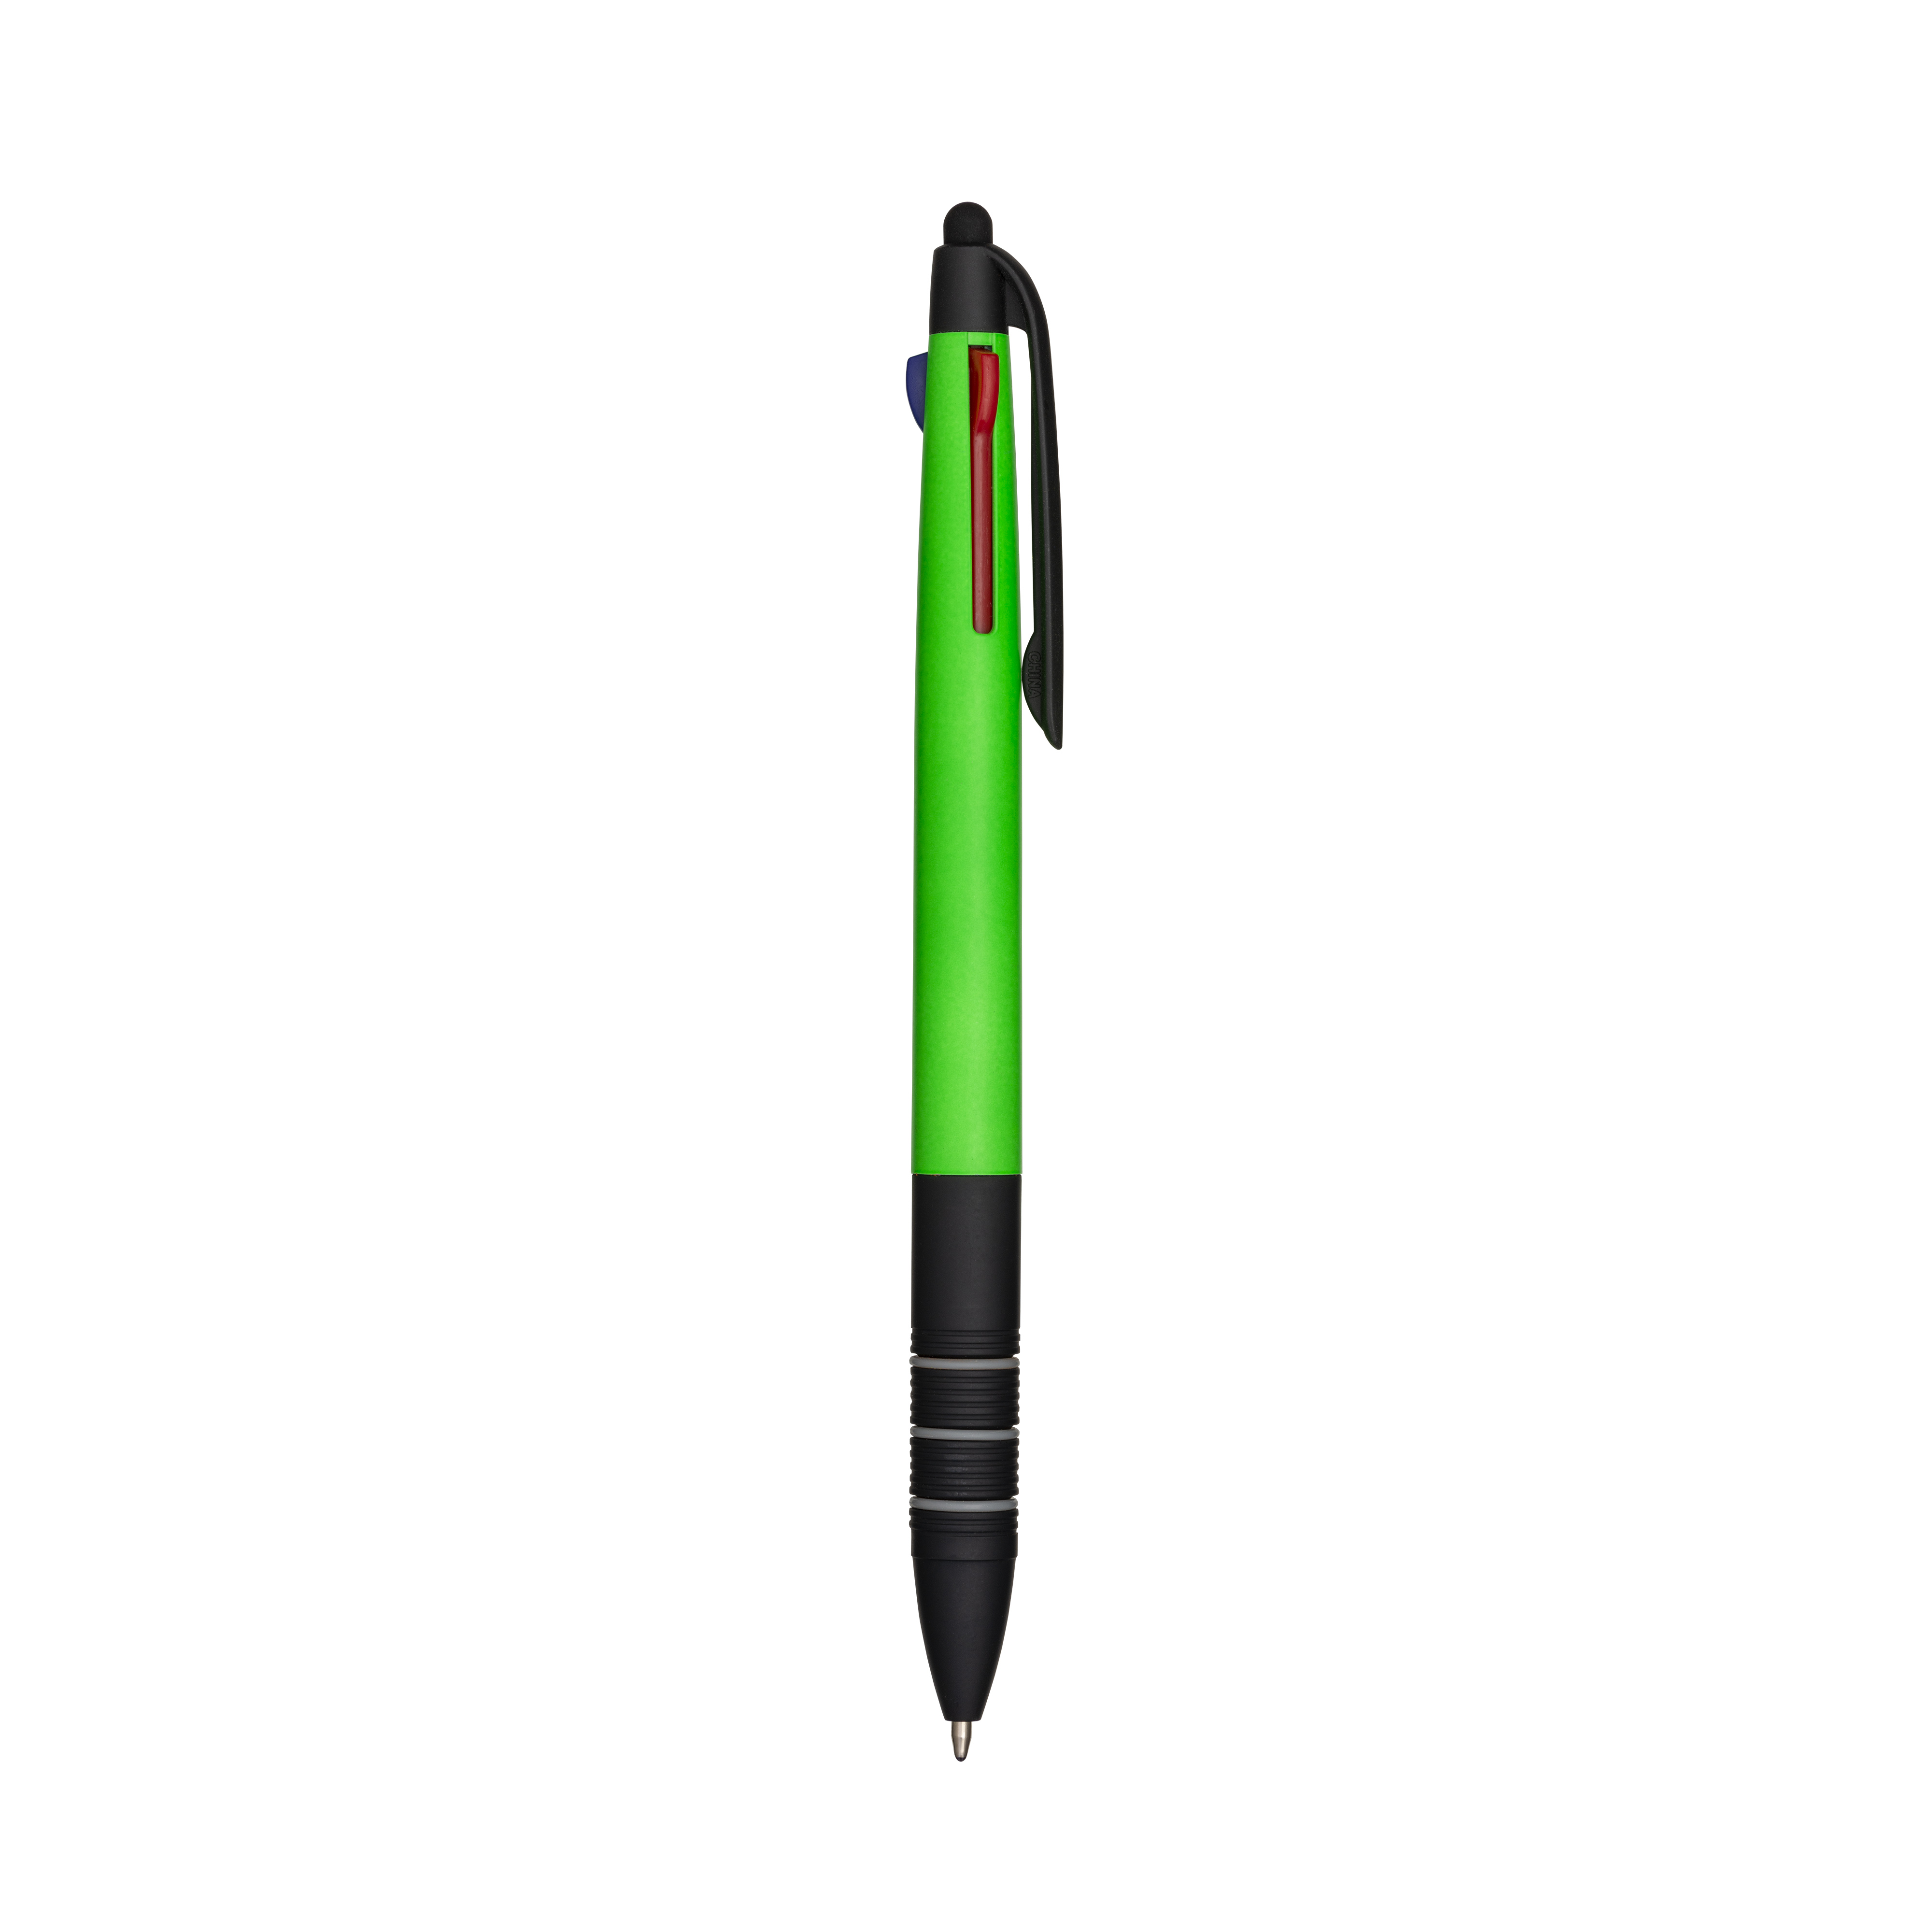 4 In 1 simpatiche penne a sfera multicolore colorate nero blu verde